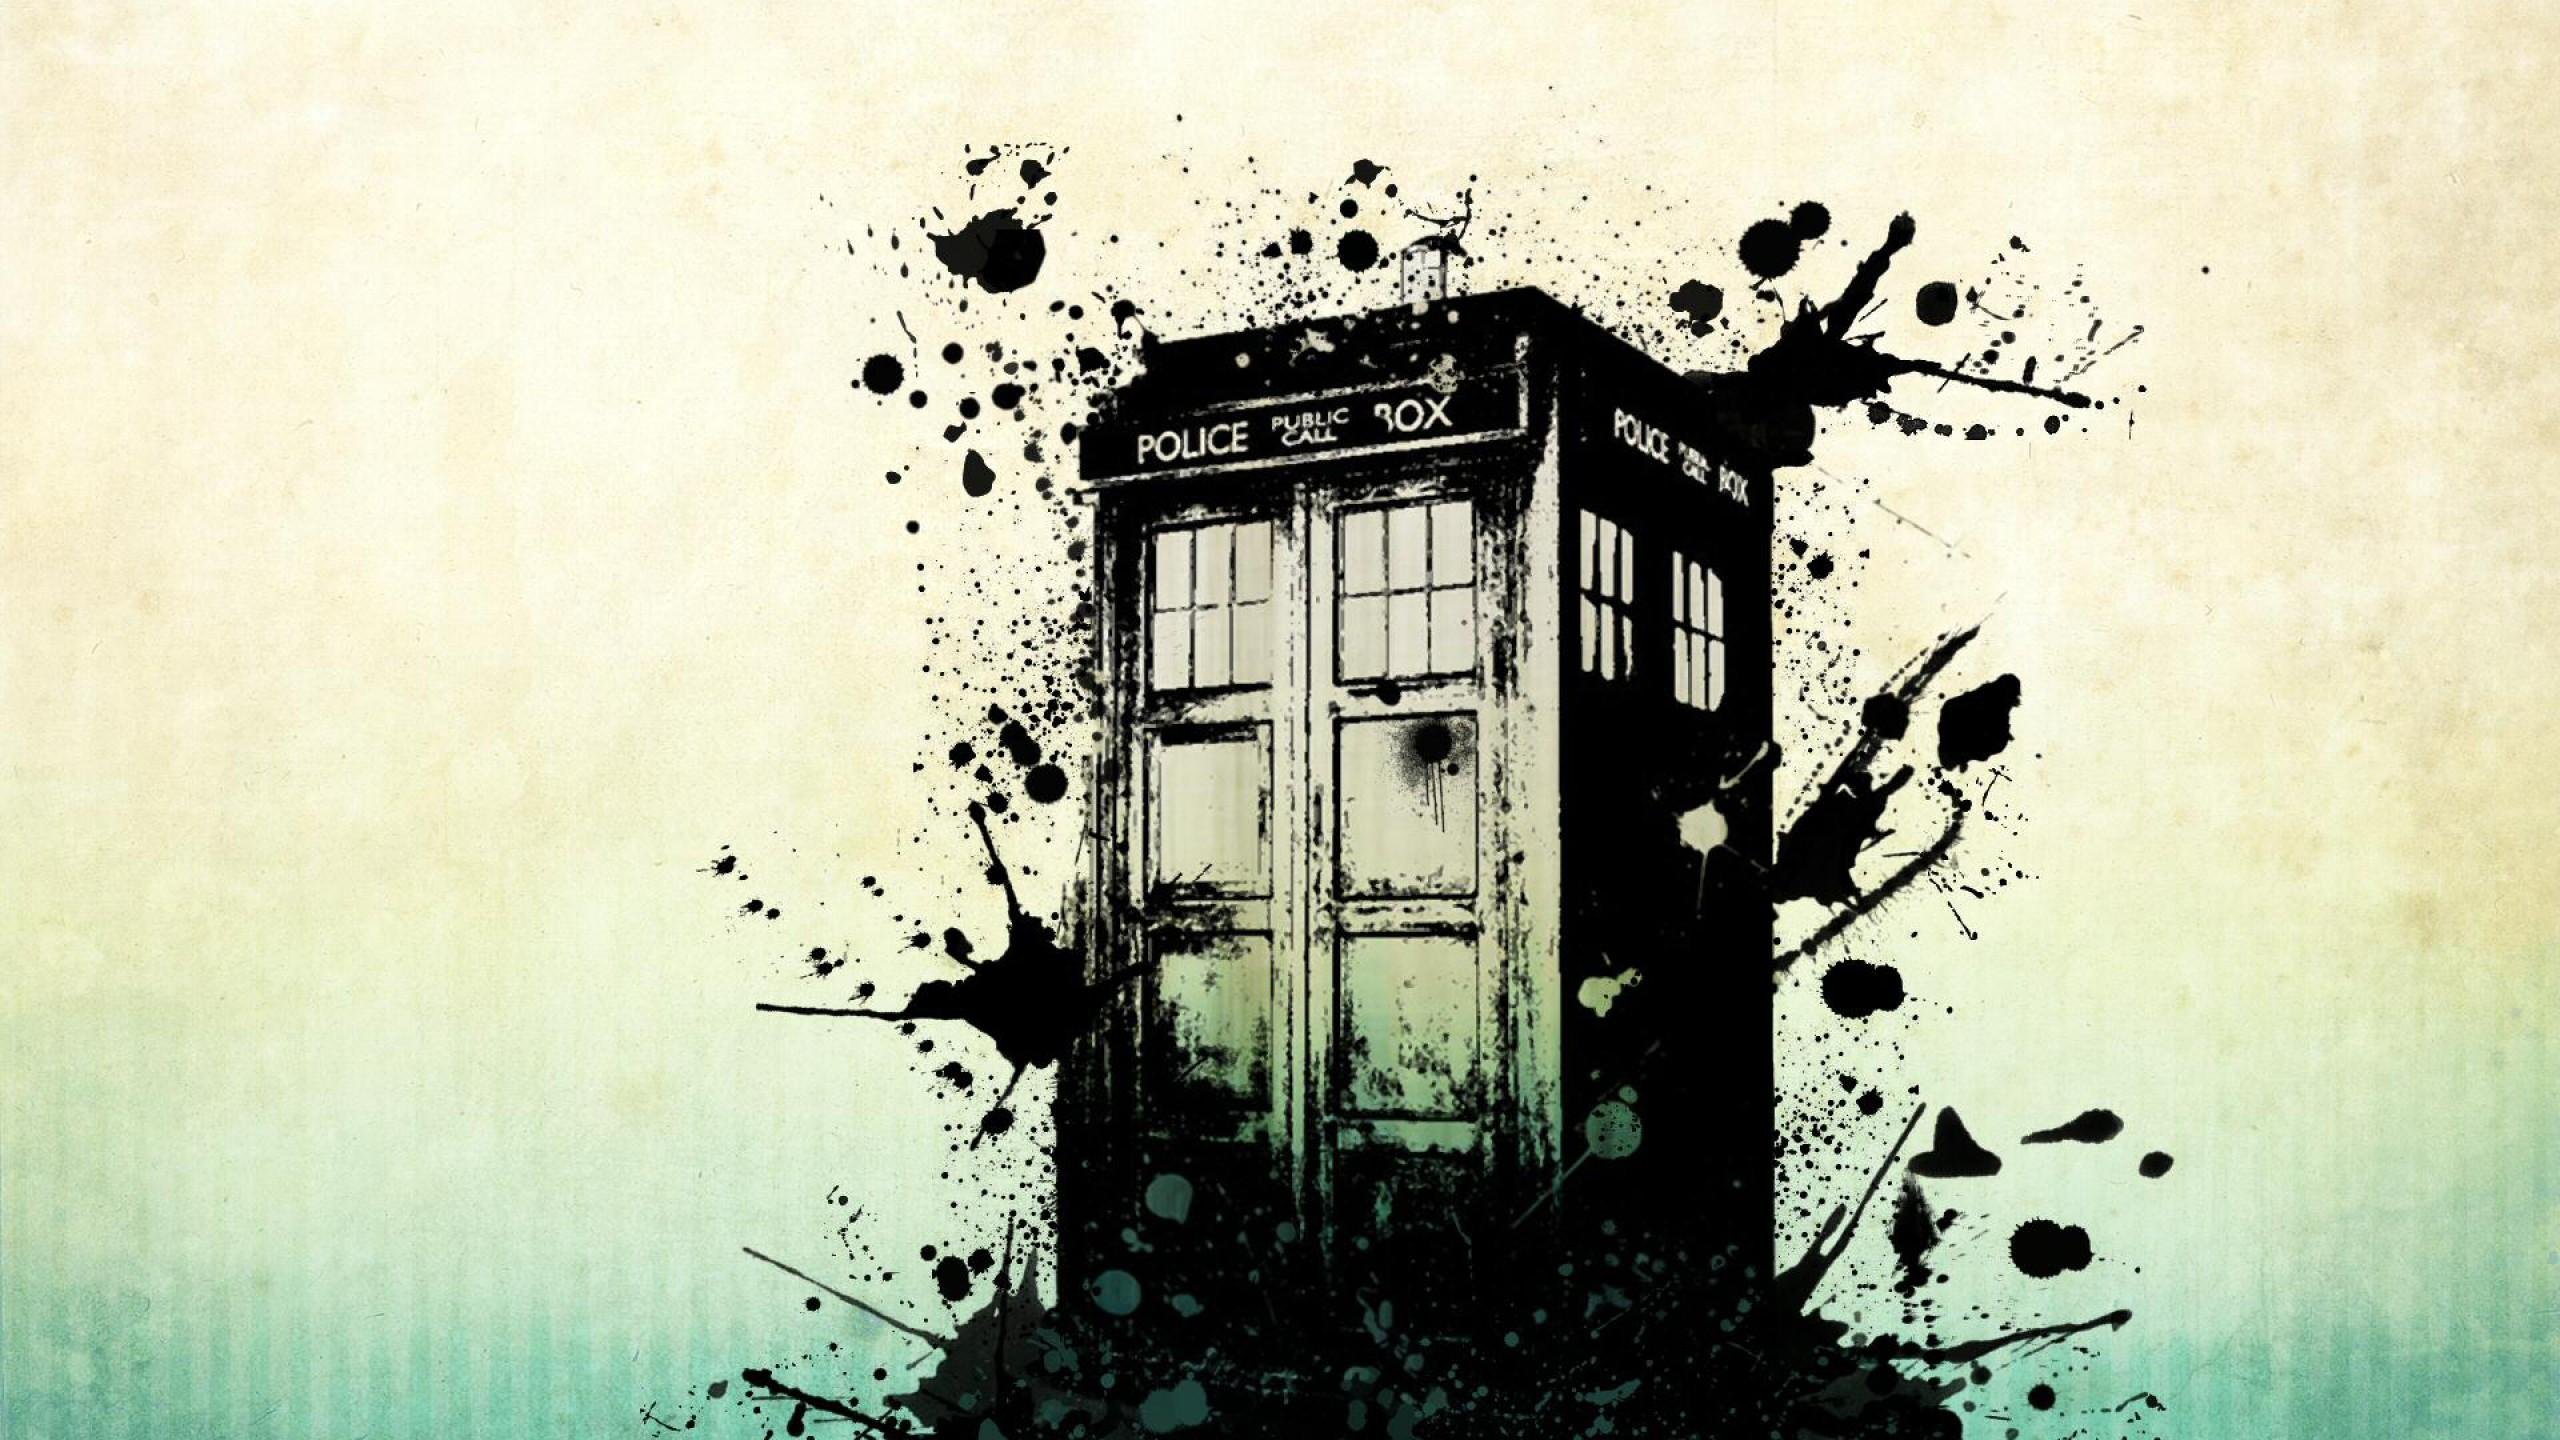 doctor, Who, Bbc, Sci fi, Futuristic, Series, Comedy, Adventure, Drama, 1dwho Wallpaper